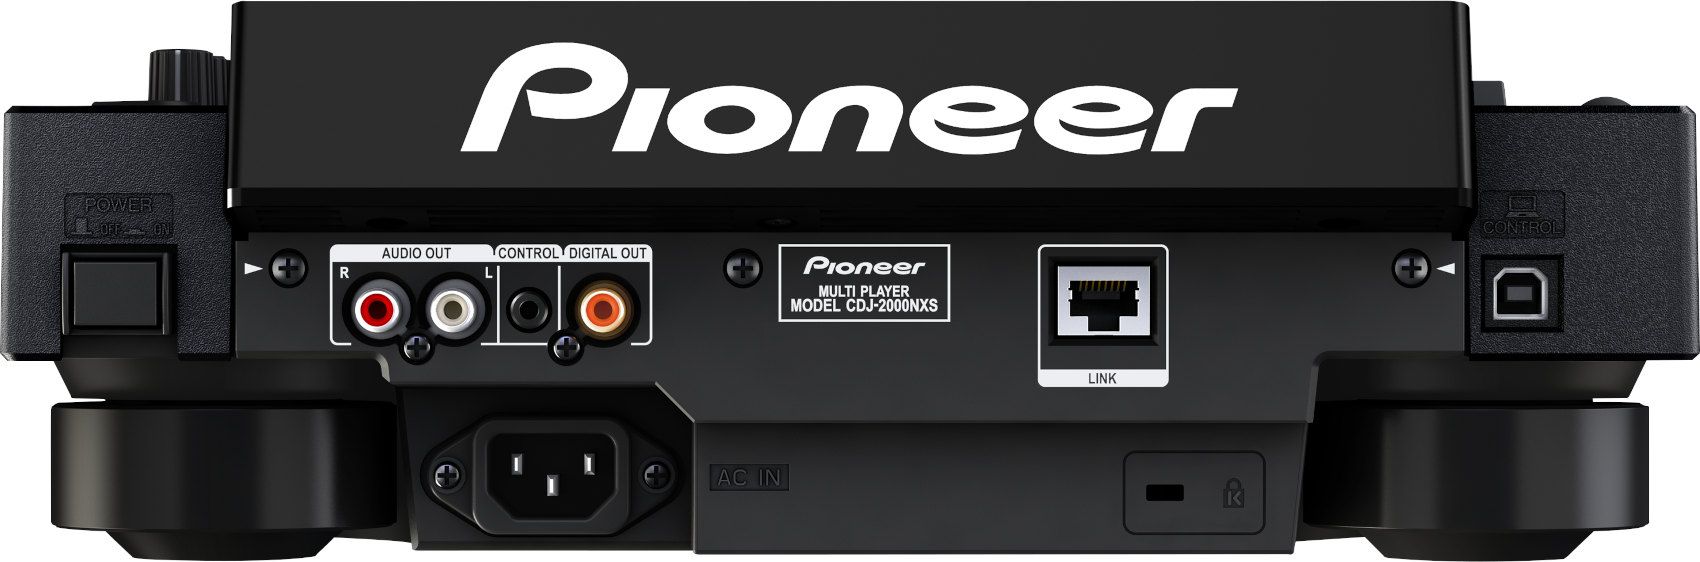 Pioneer CDJ-2000 Nexus - фото 3